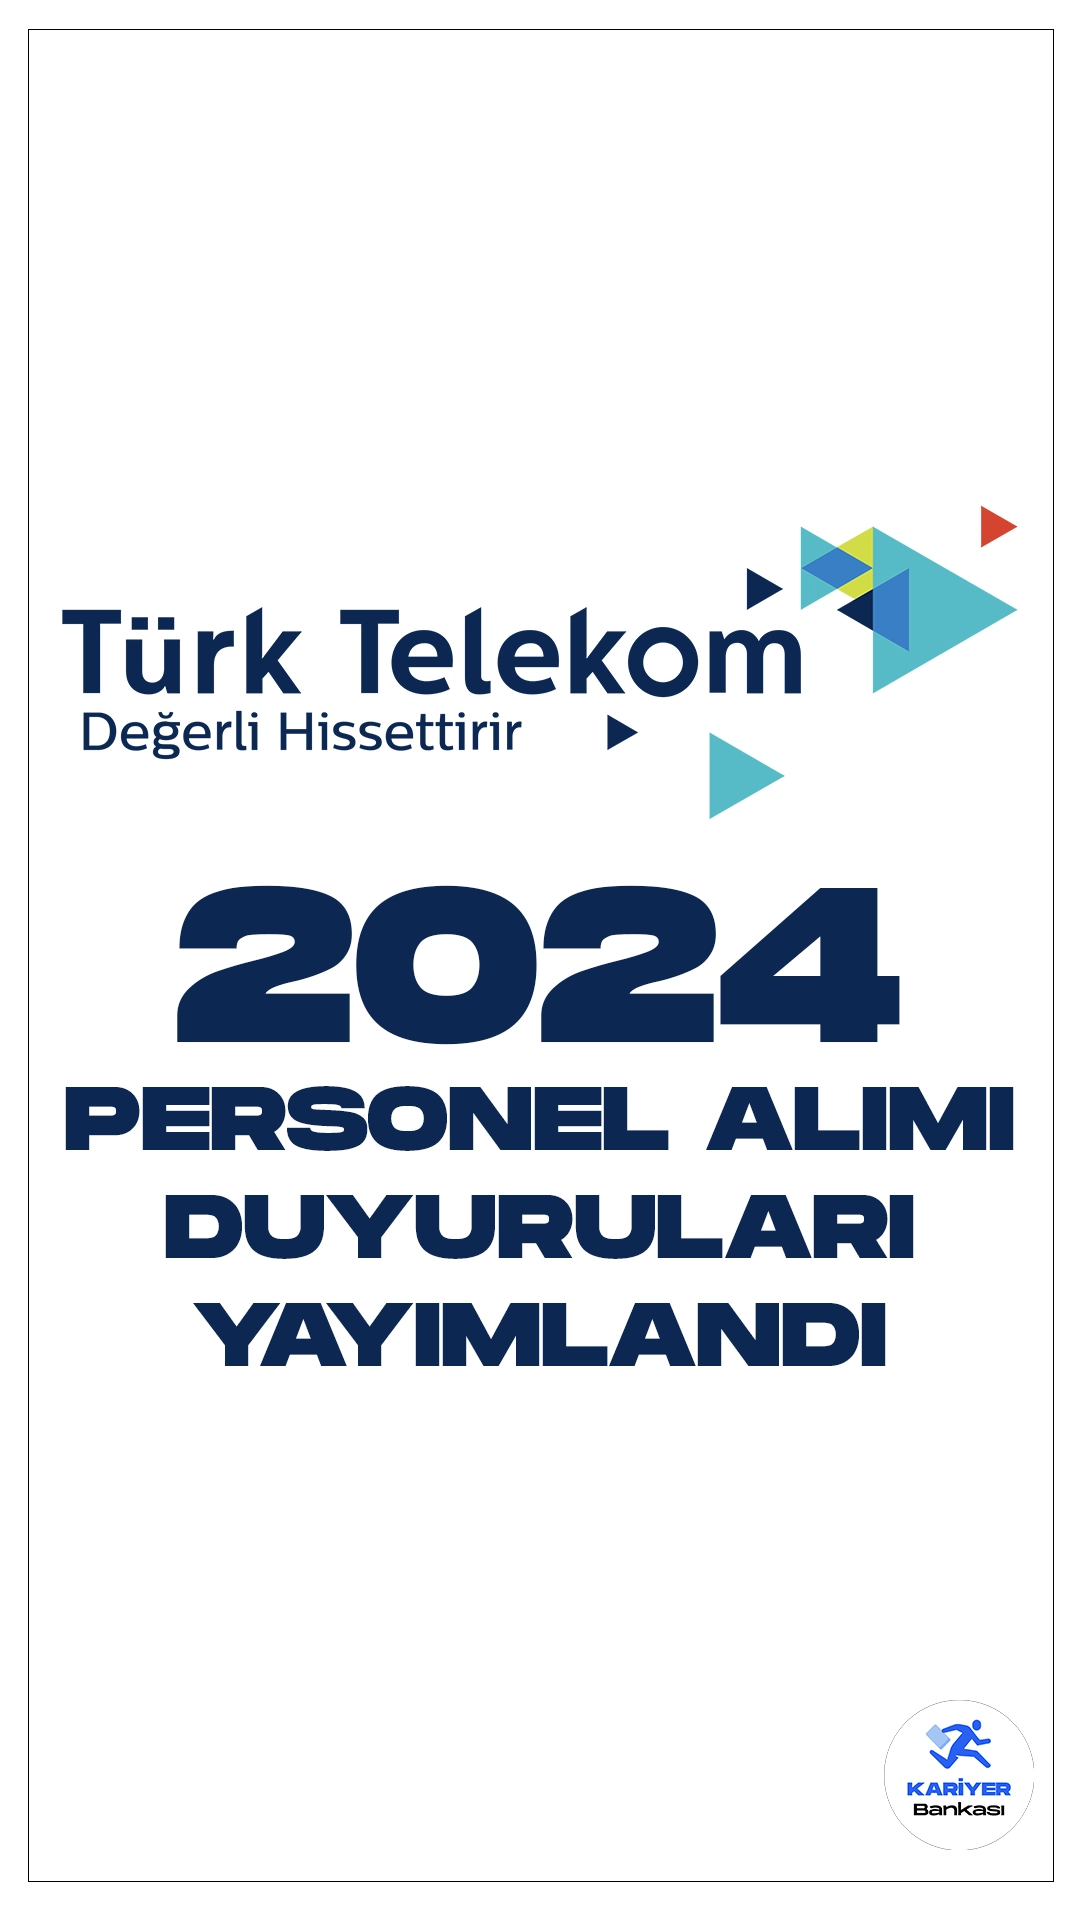 Türk Telekom 2024 Yılı Personel Alımı Duyuruları Yayımlandı. Türk Telekom Kariyer sayfasından yayımlanan duyurulara göre, Türk Telekoma veri muhafızı, veri mimarı, satış kontrol uzmanı ünvanlarında olmak üzere personel alımları yapılacak.Başvuru yapacak adayların şartları dikkatle incelemesi gerekmektedir.